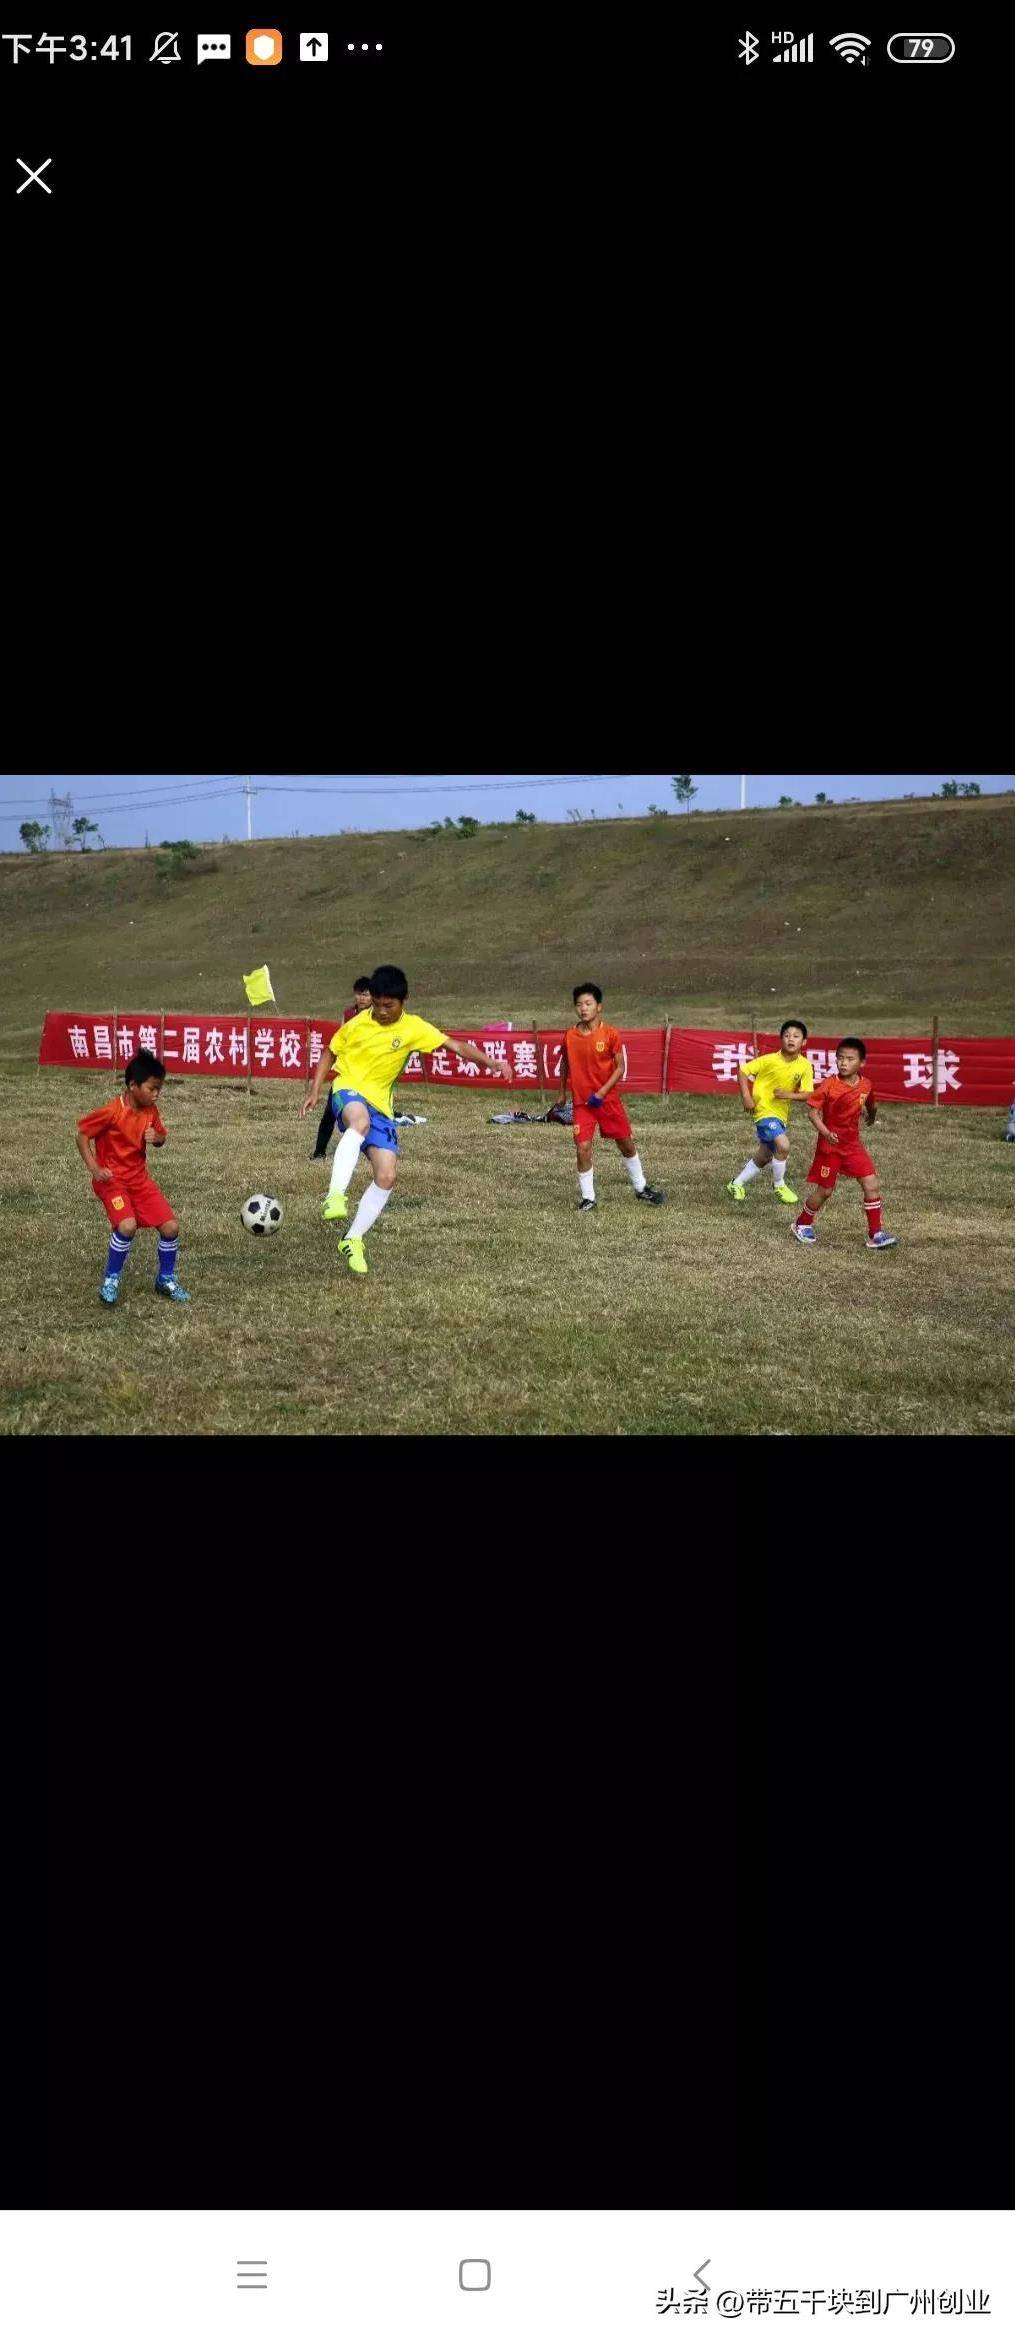 皇冠体育App下载_一个很全面的关于中国足球青少年培训的改革计划